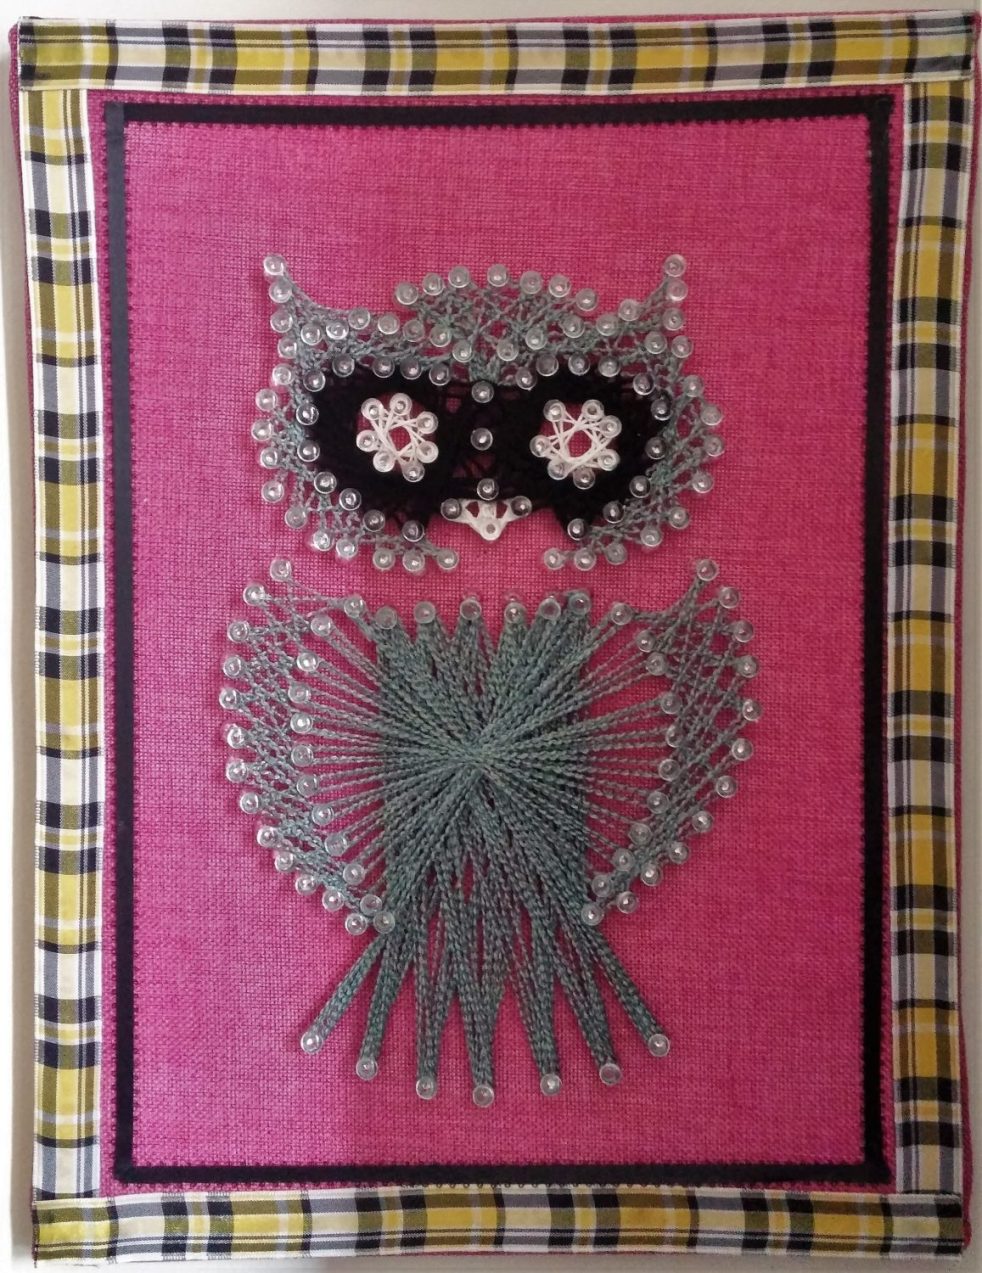 Owl string art